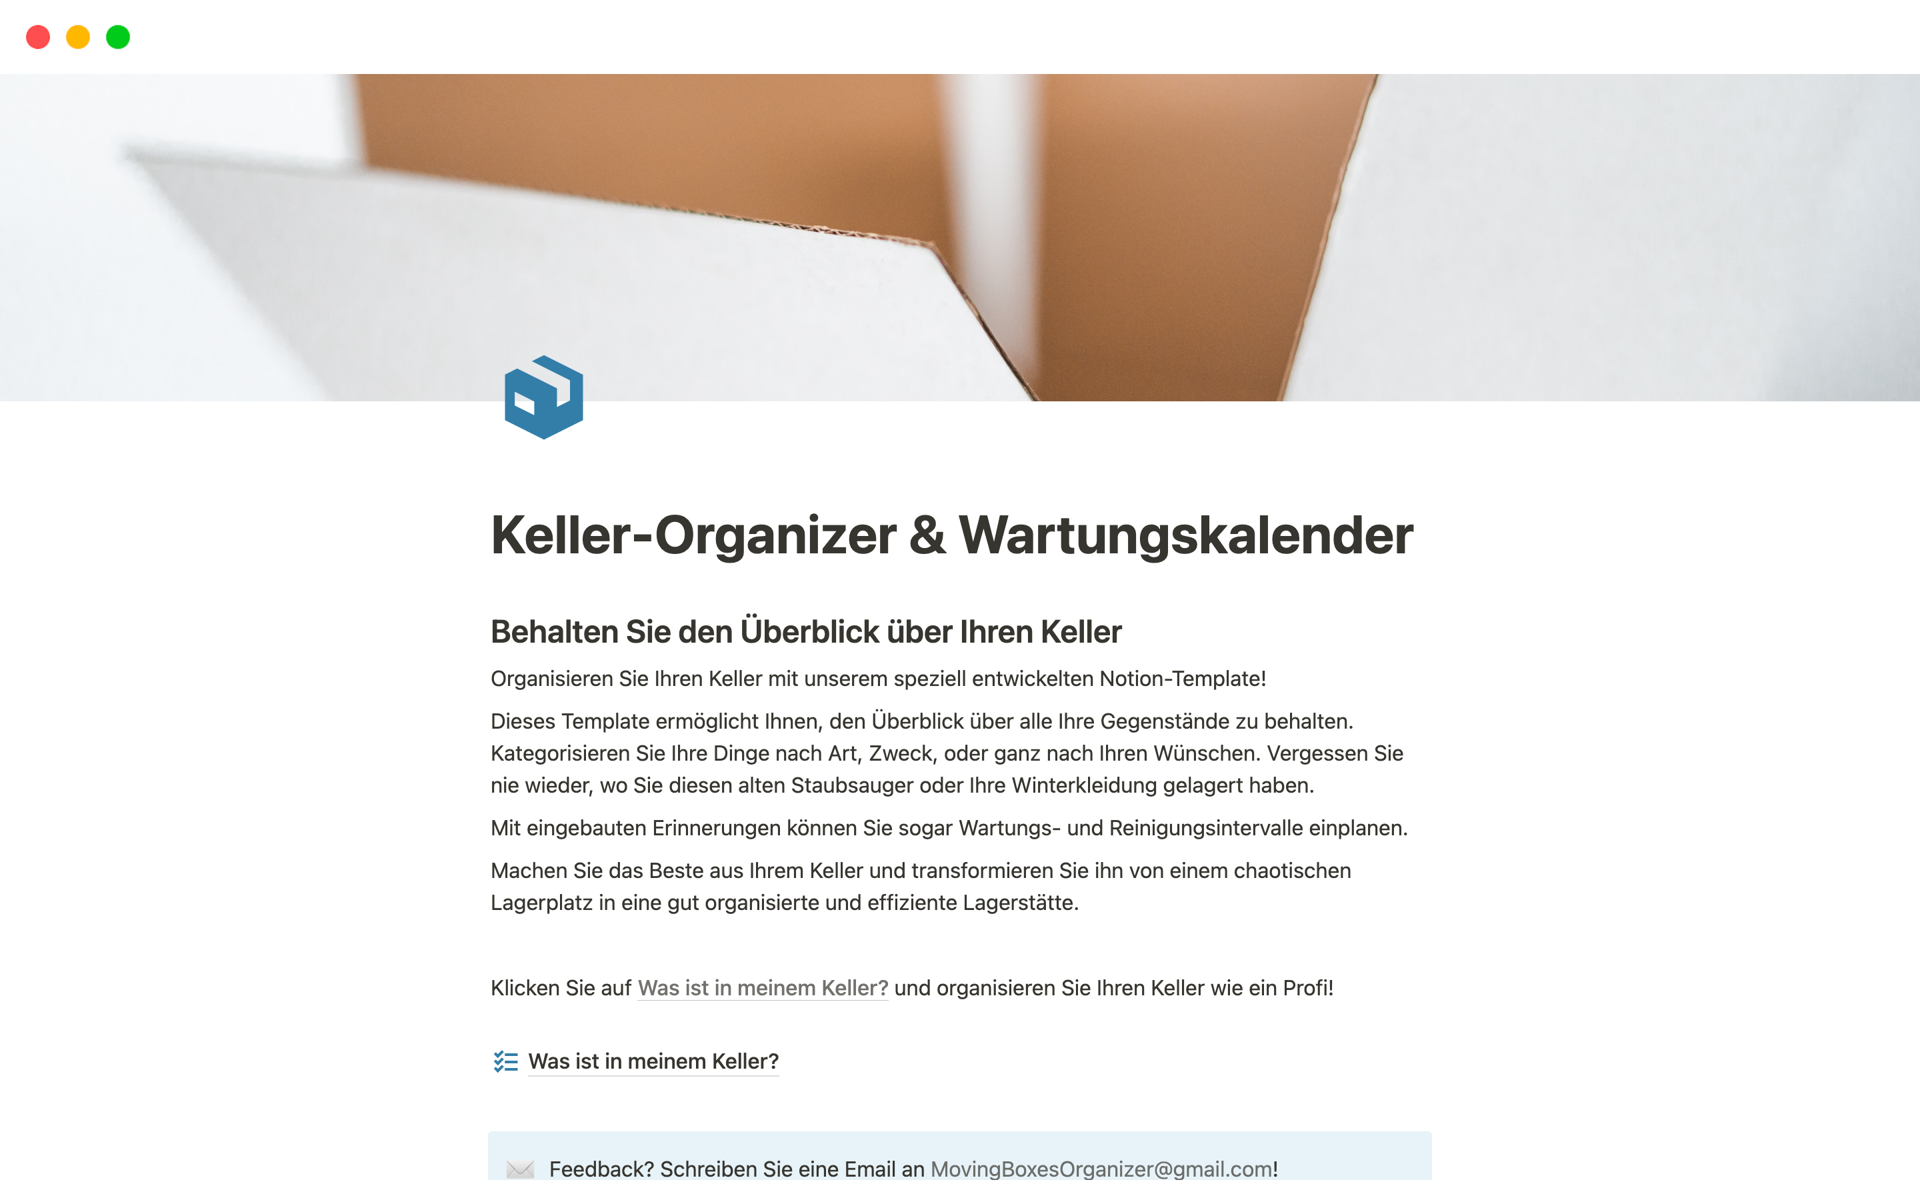 A template preview for Keller-Organizer & Wartungskalender